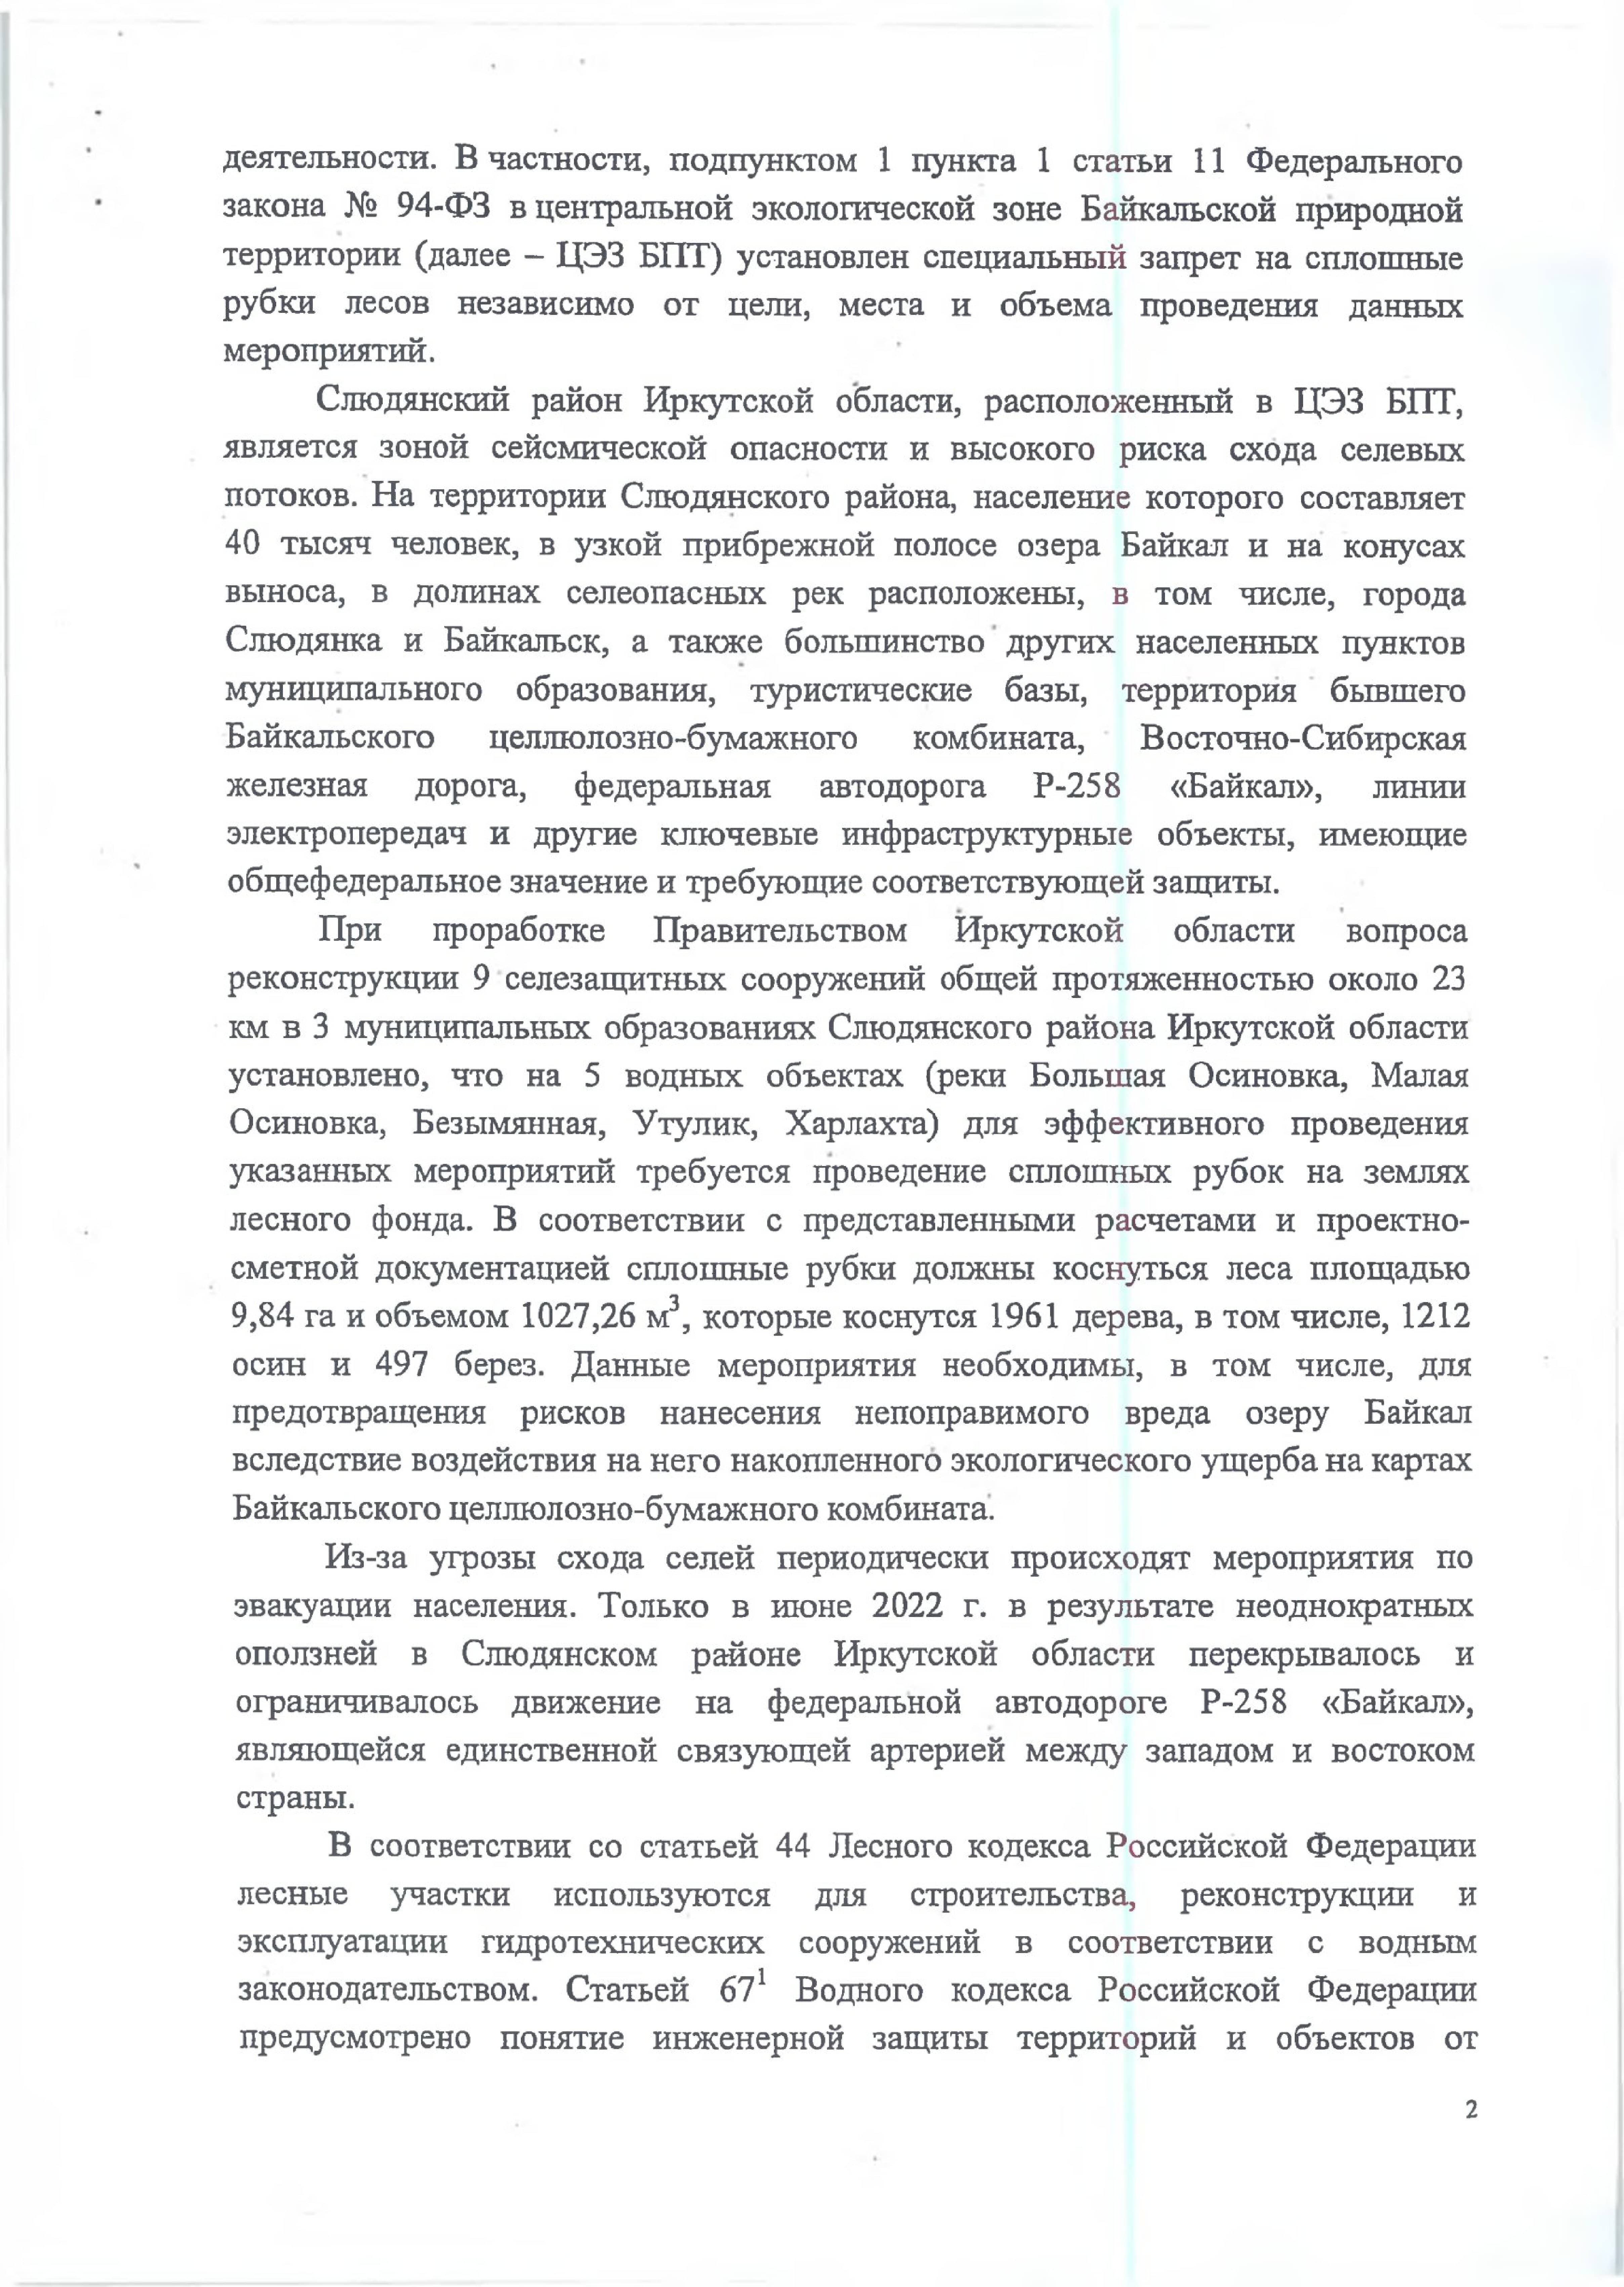 В редакцию поступили новые предложения к документам по охране озера Байкал - фото 12